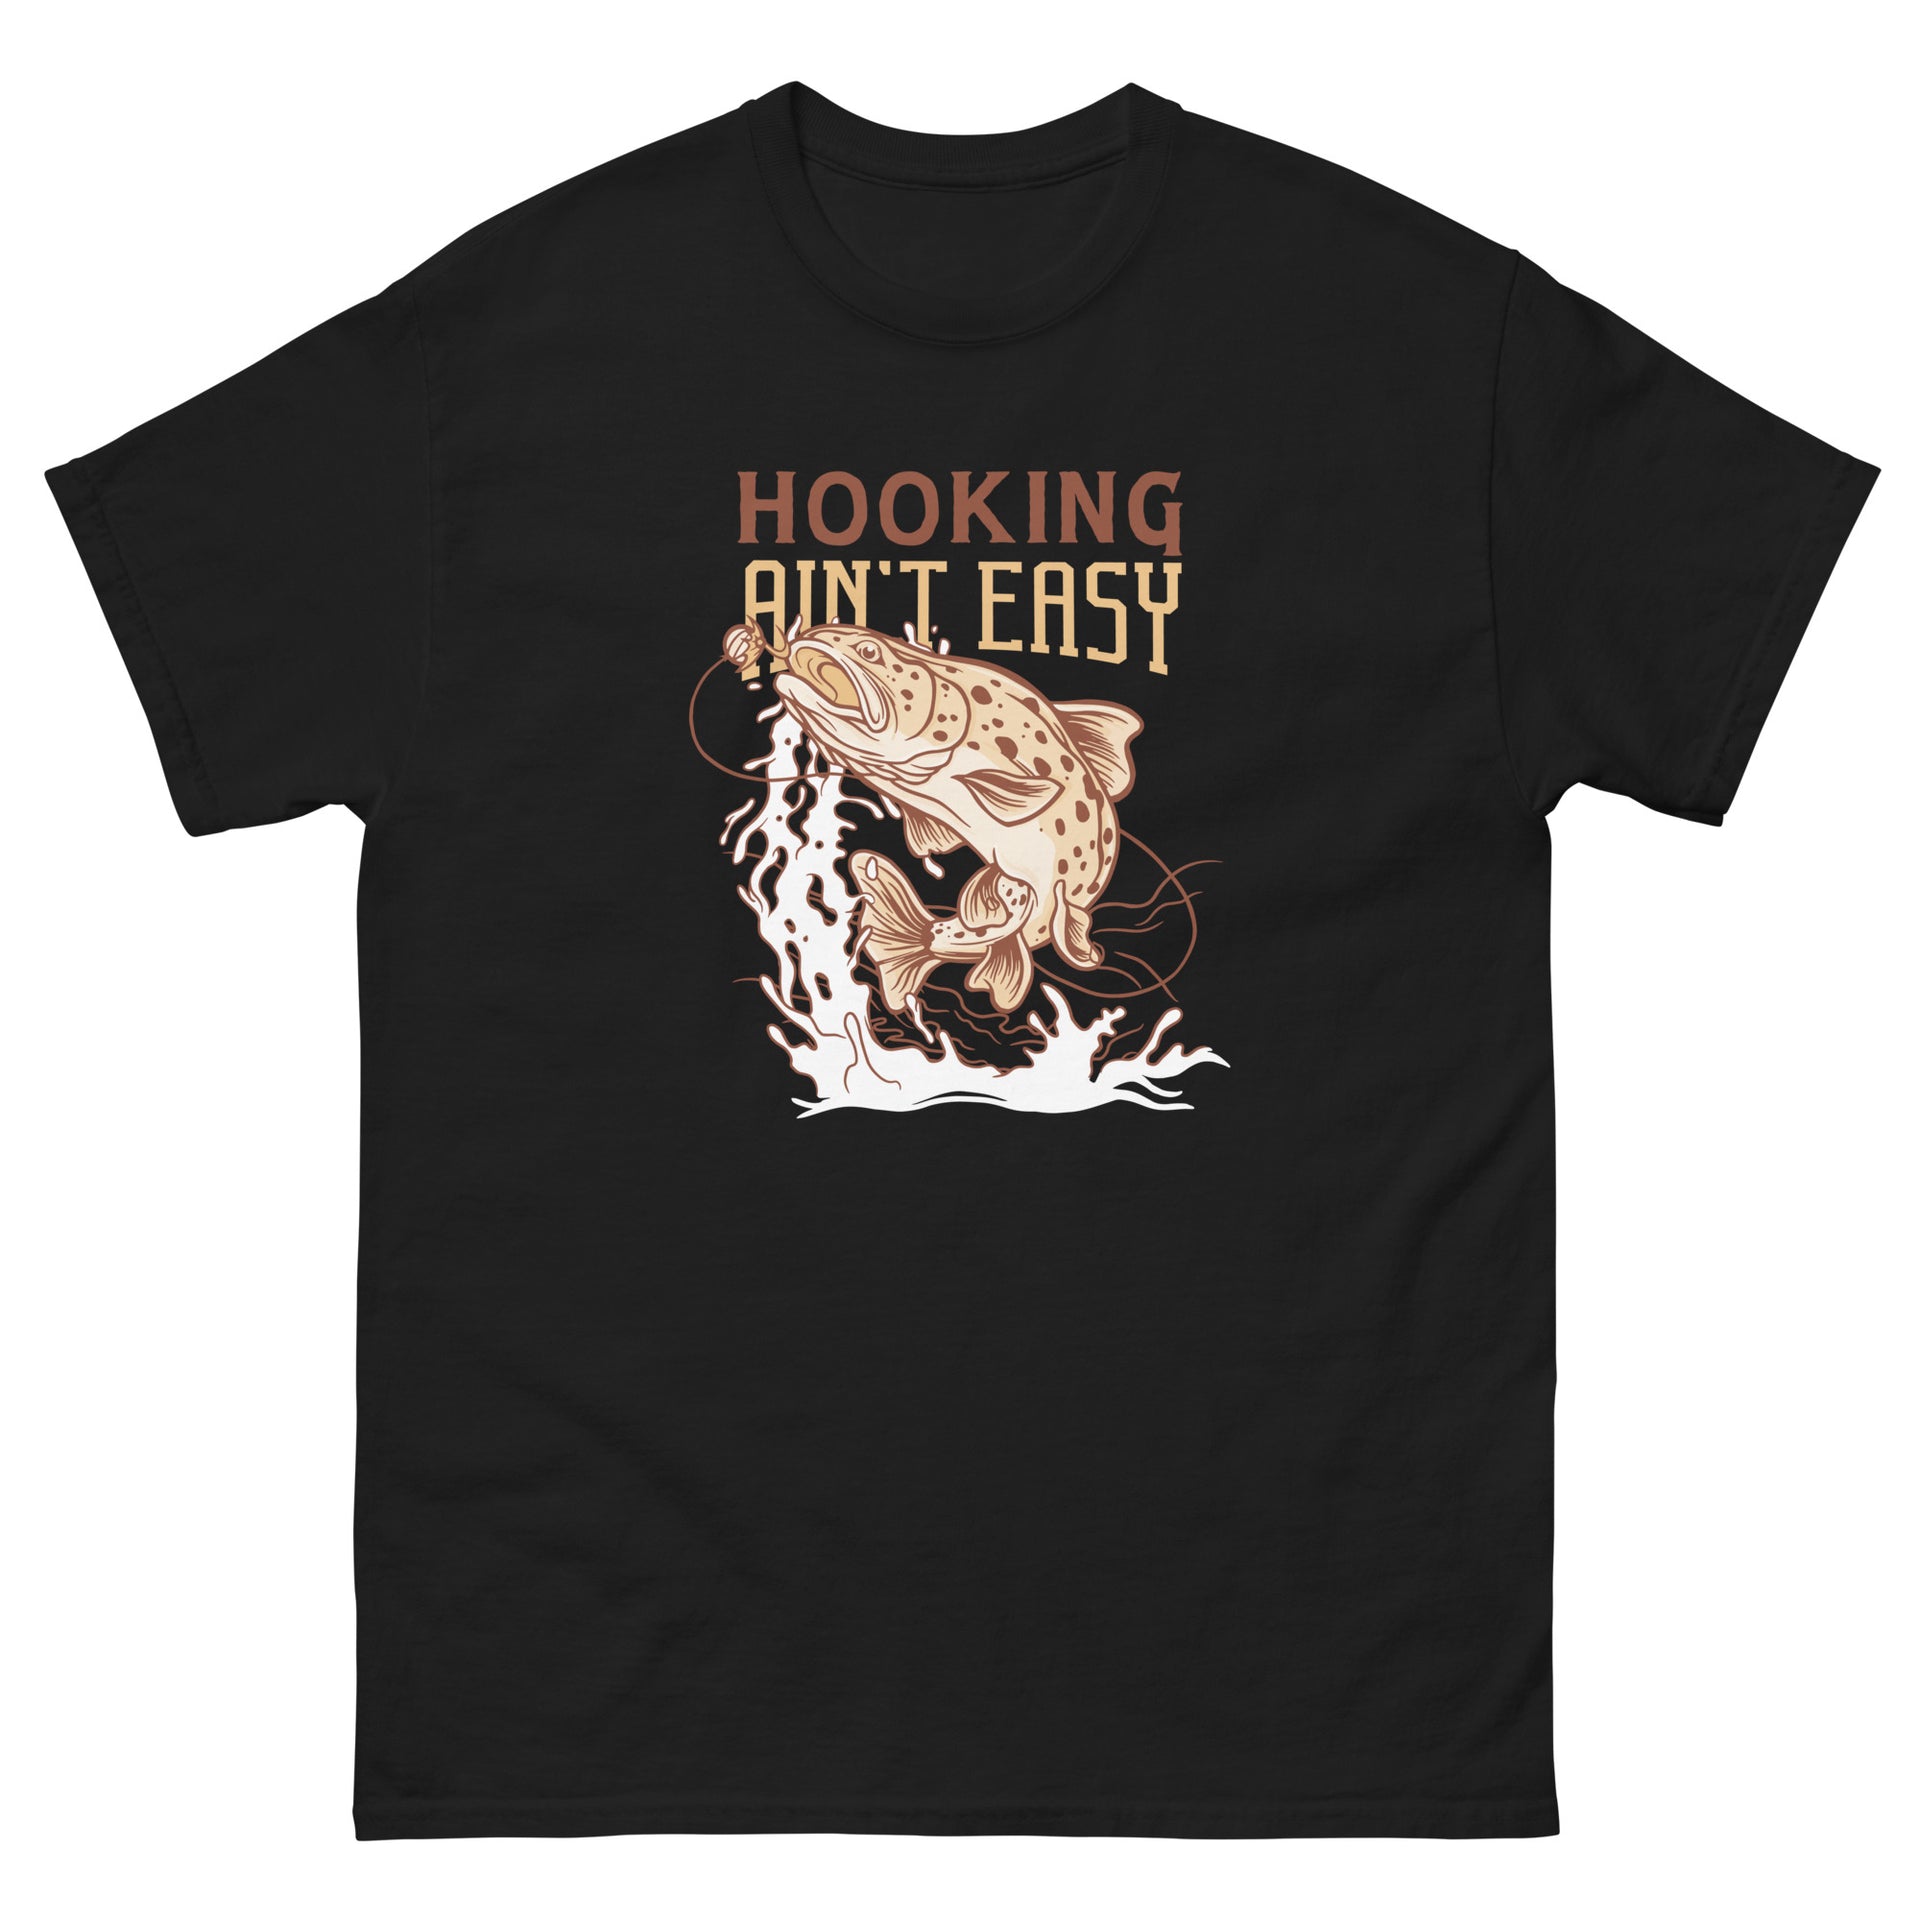 Fishing Makes Me Happy Men's T-Shirt